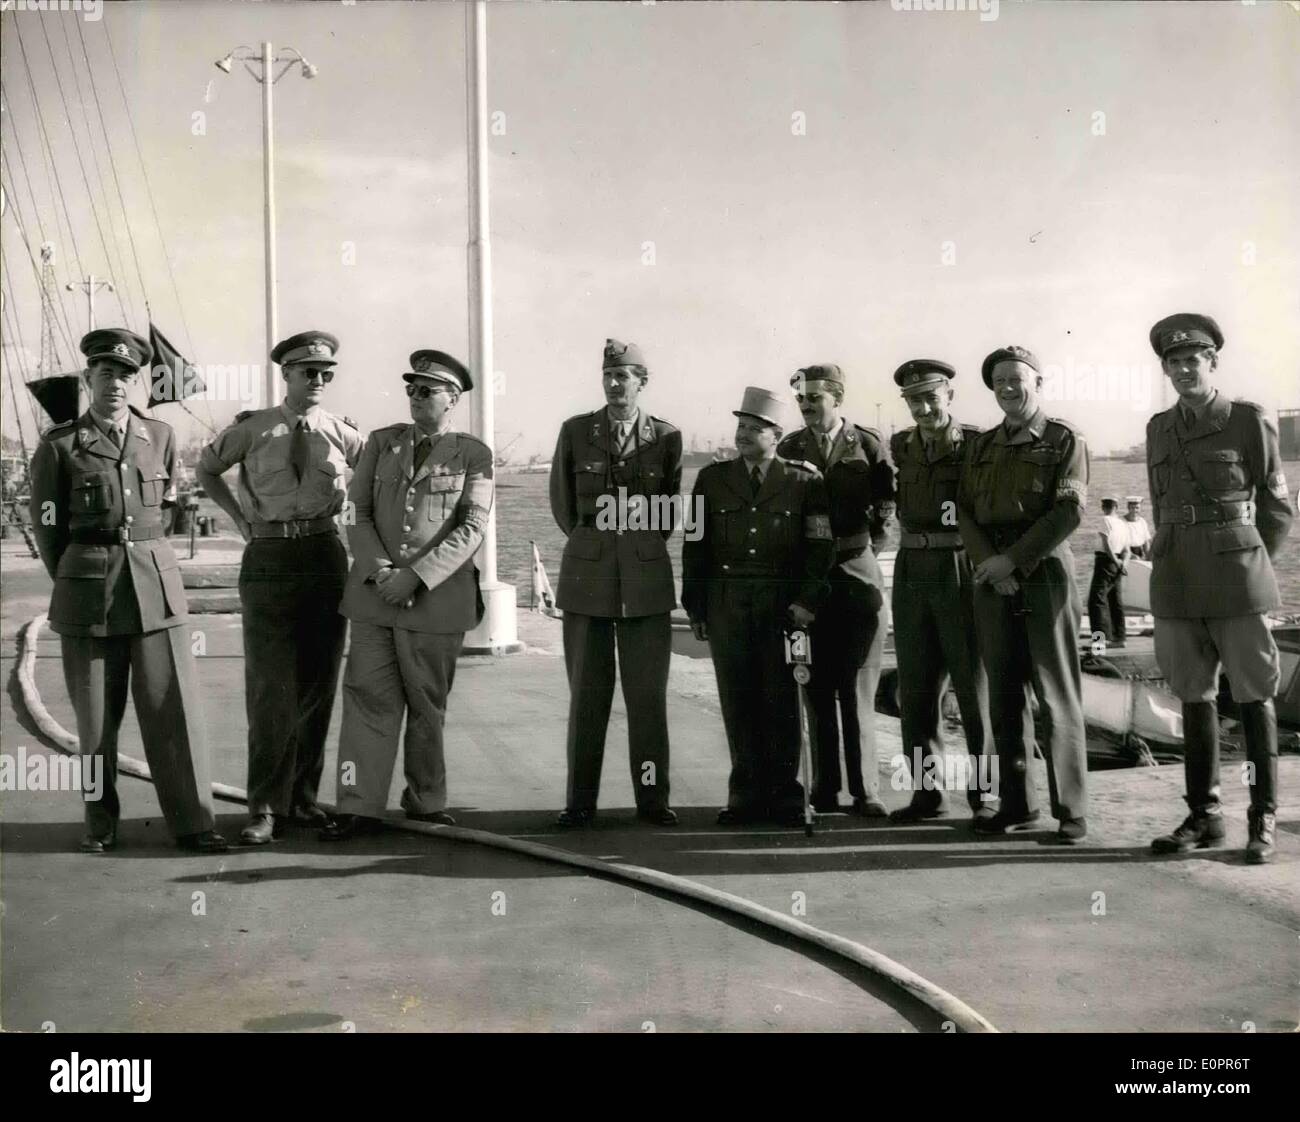 11 novembre 1956 - Les observateurs de l'ONU arrivent au Port Said. : Photo reçu à Londres aujourd'hui à partir de Port Saïd. L'Organisation des Nations Unies est observe à partir de n'importe quel pays de l'ONU est arrivé à Port dit par les engins de débarquement. Ils étaient venus pour observer le cessez-le-feu entre les forces égyptiennes et anglo-français. Photo montre afters ils étaient arrivés à Port Said ils conduisirent le Quartier Général Allié à Suez. Ils y ont rencontré le commandant de la Force opérationnelle le Général Sir Hugh Stockwell. Hore sont un groupe de la relève à Suez maison avec le canal à l'arrière-plan. Banque D'Images